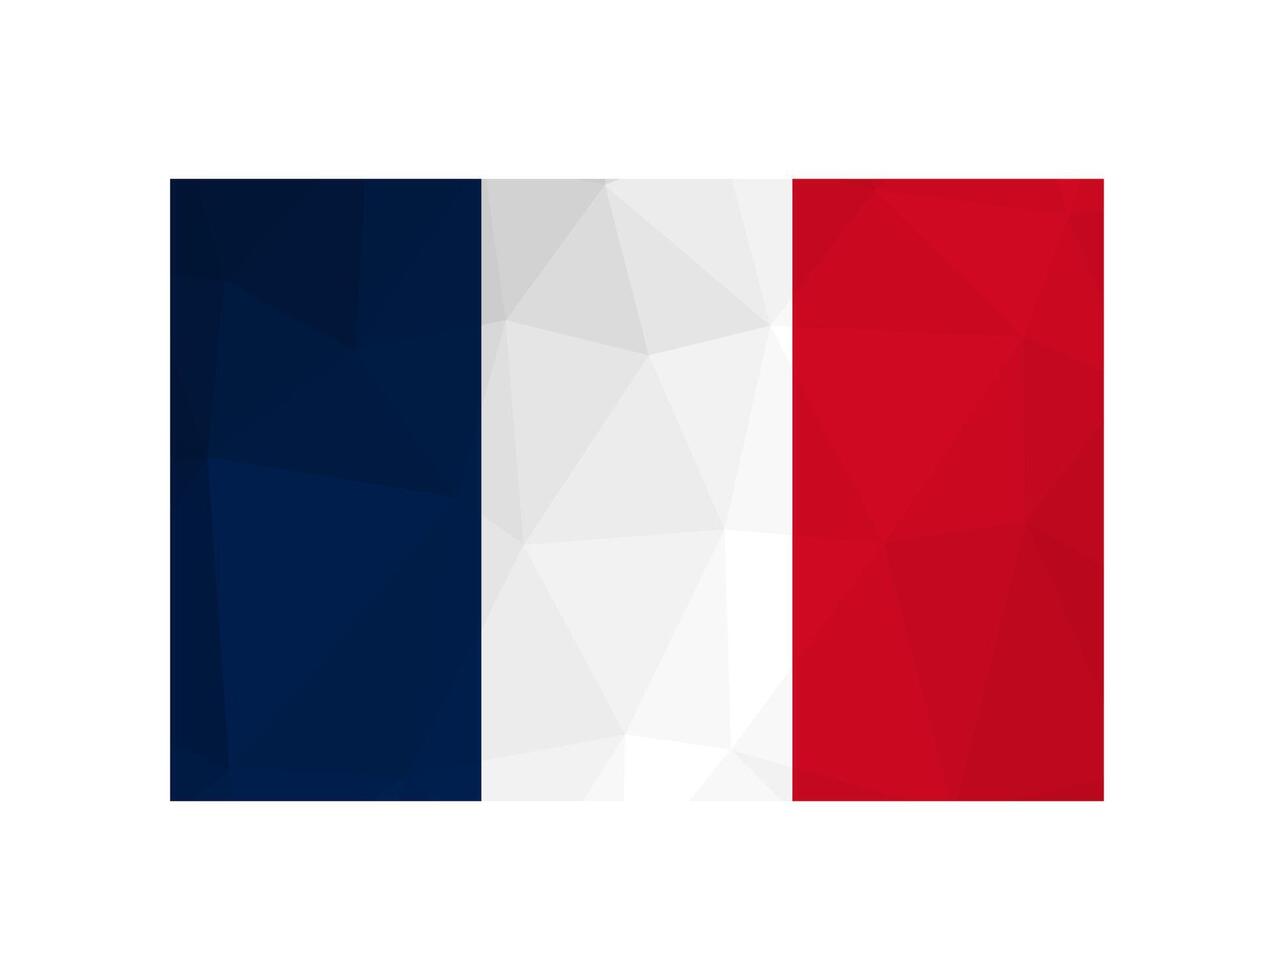 Vektor isoliert Illustration. National Französisch Flagge Vertikale dreifarbig von Blau, Weiss, Rot. offiziell Symbol von Frankreich. kreativ Design im niedrig poly Stil mit dreieckig Formen. Gradient Wirkung.